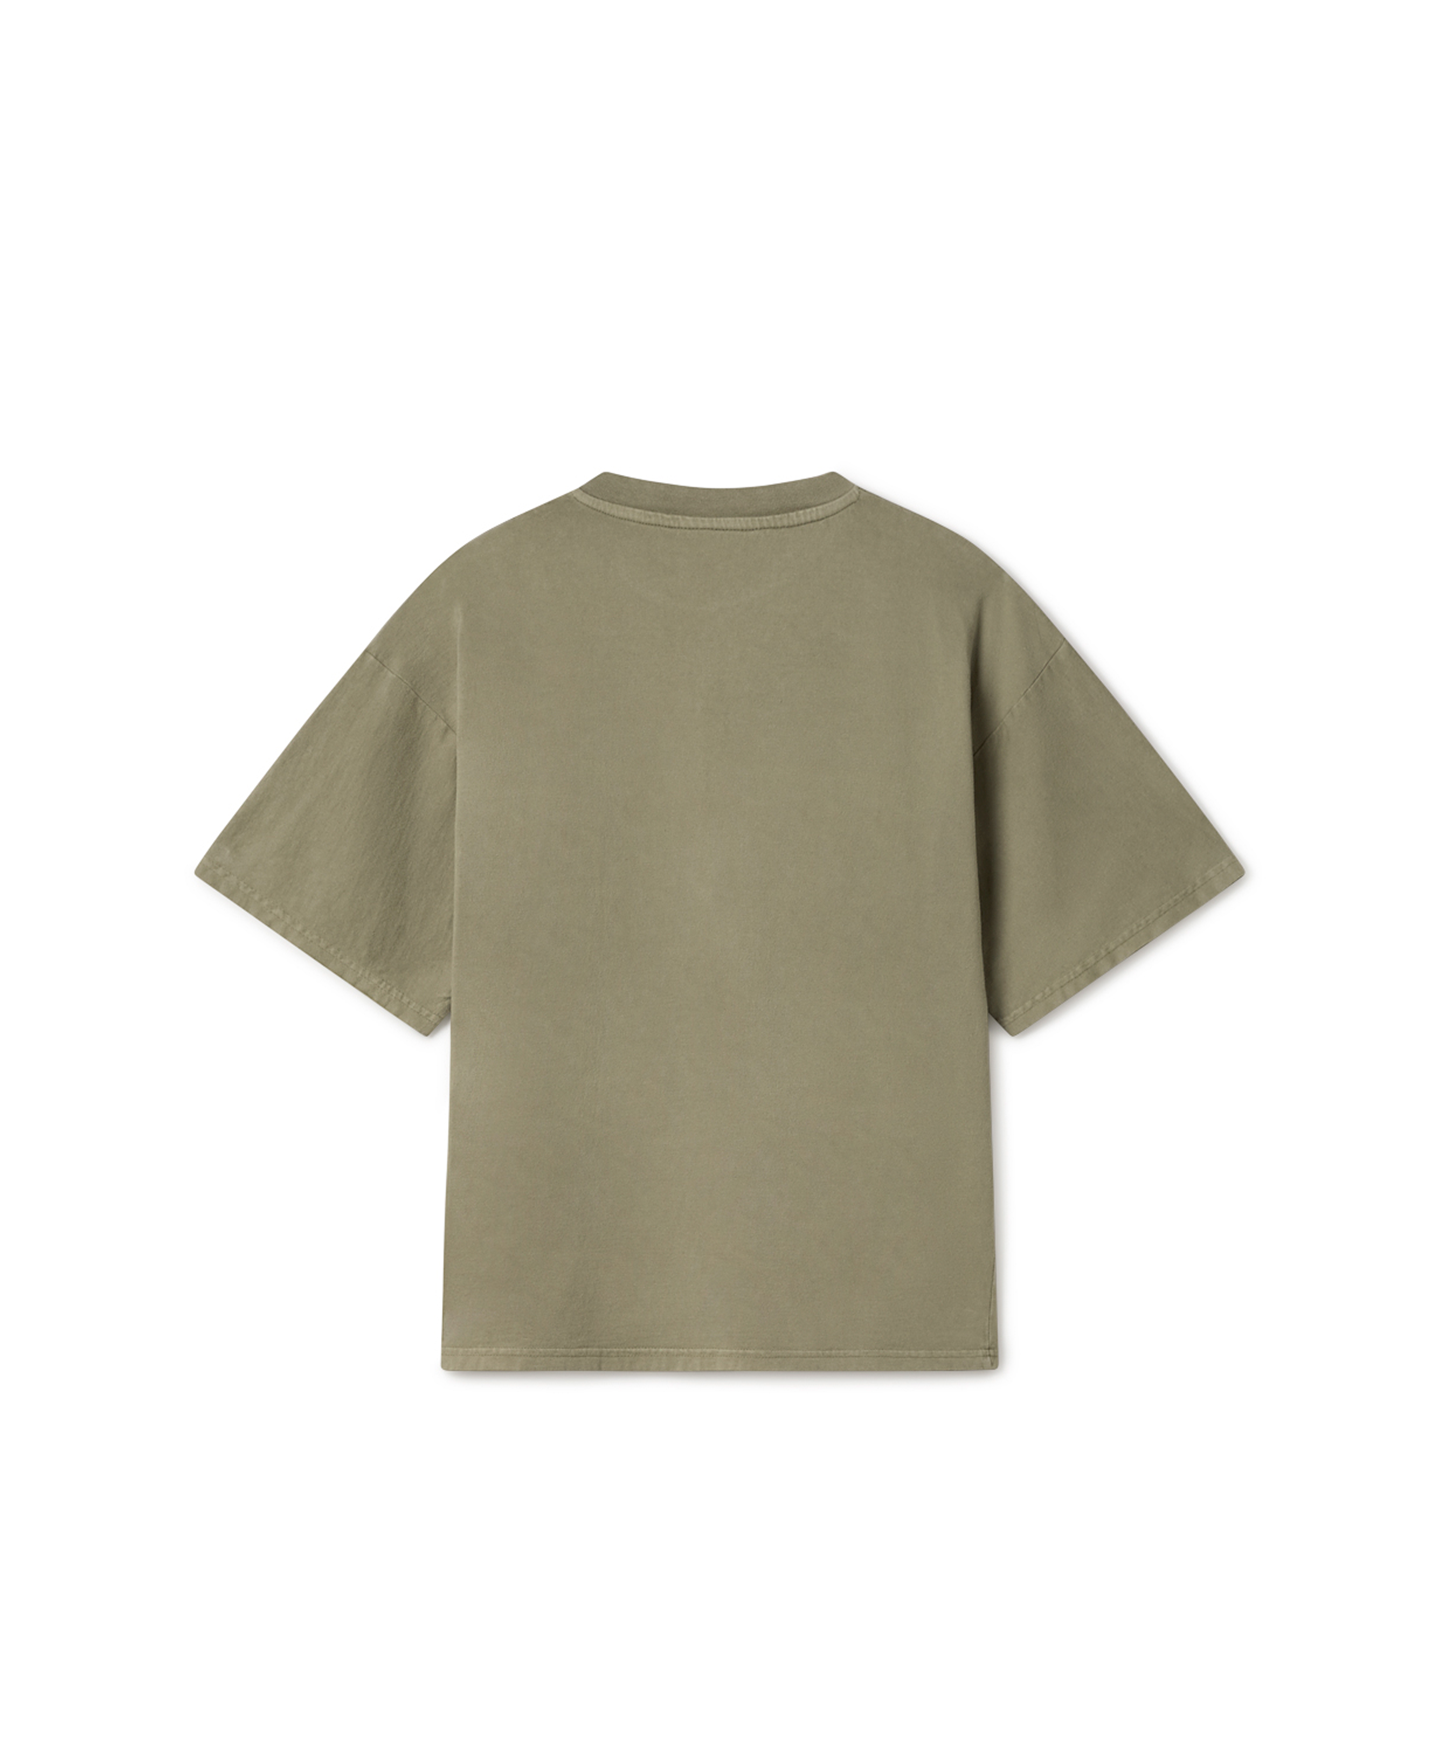 180 GSM 'Vintage Olive' T-Shirt